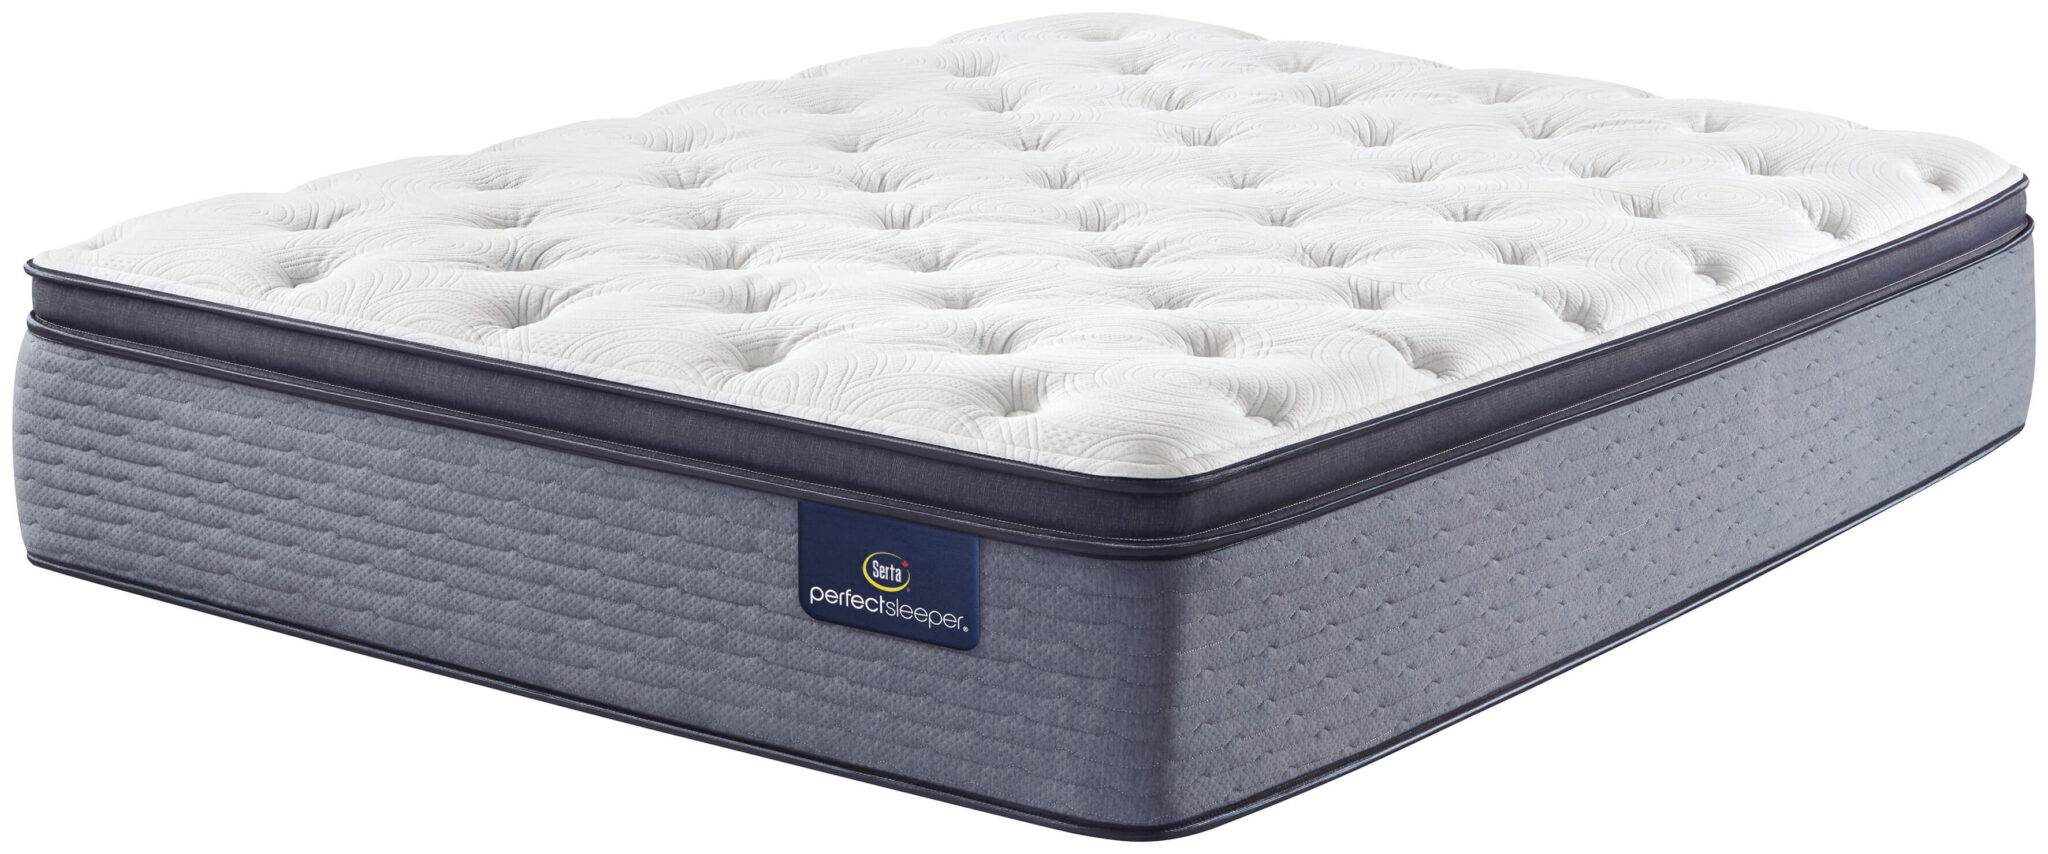 serta perfect sleeper knollcrest plush super pillowtop mattress